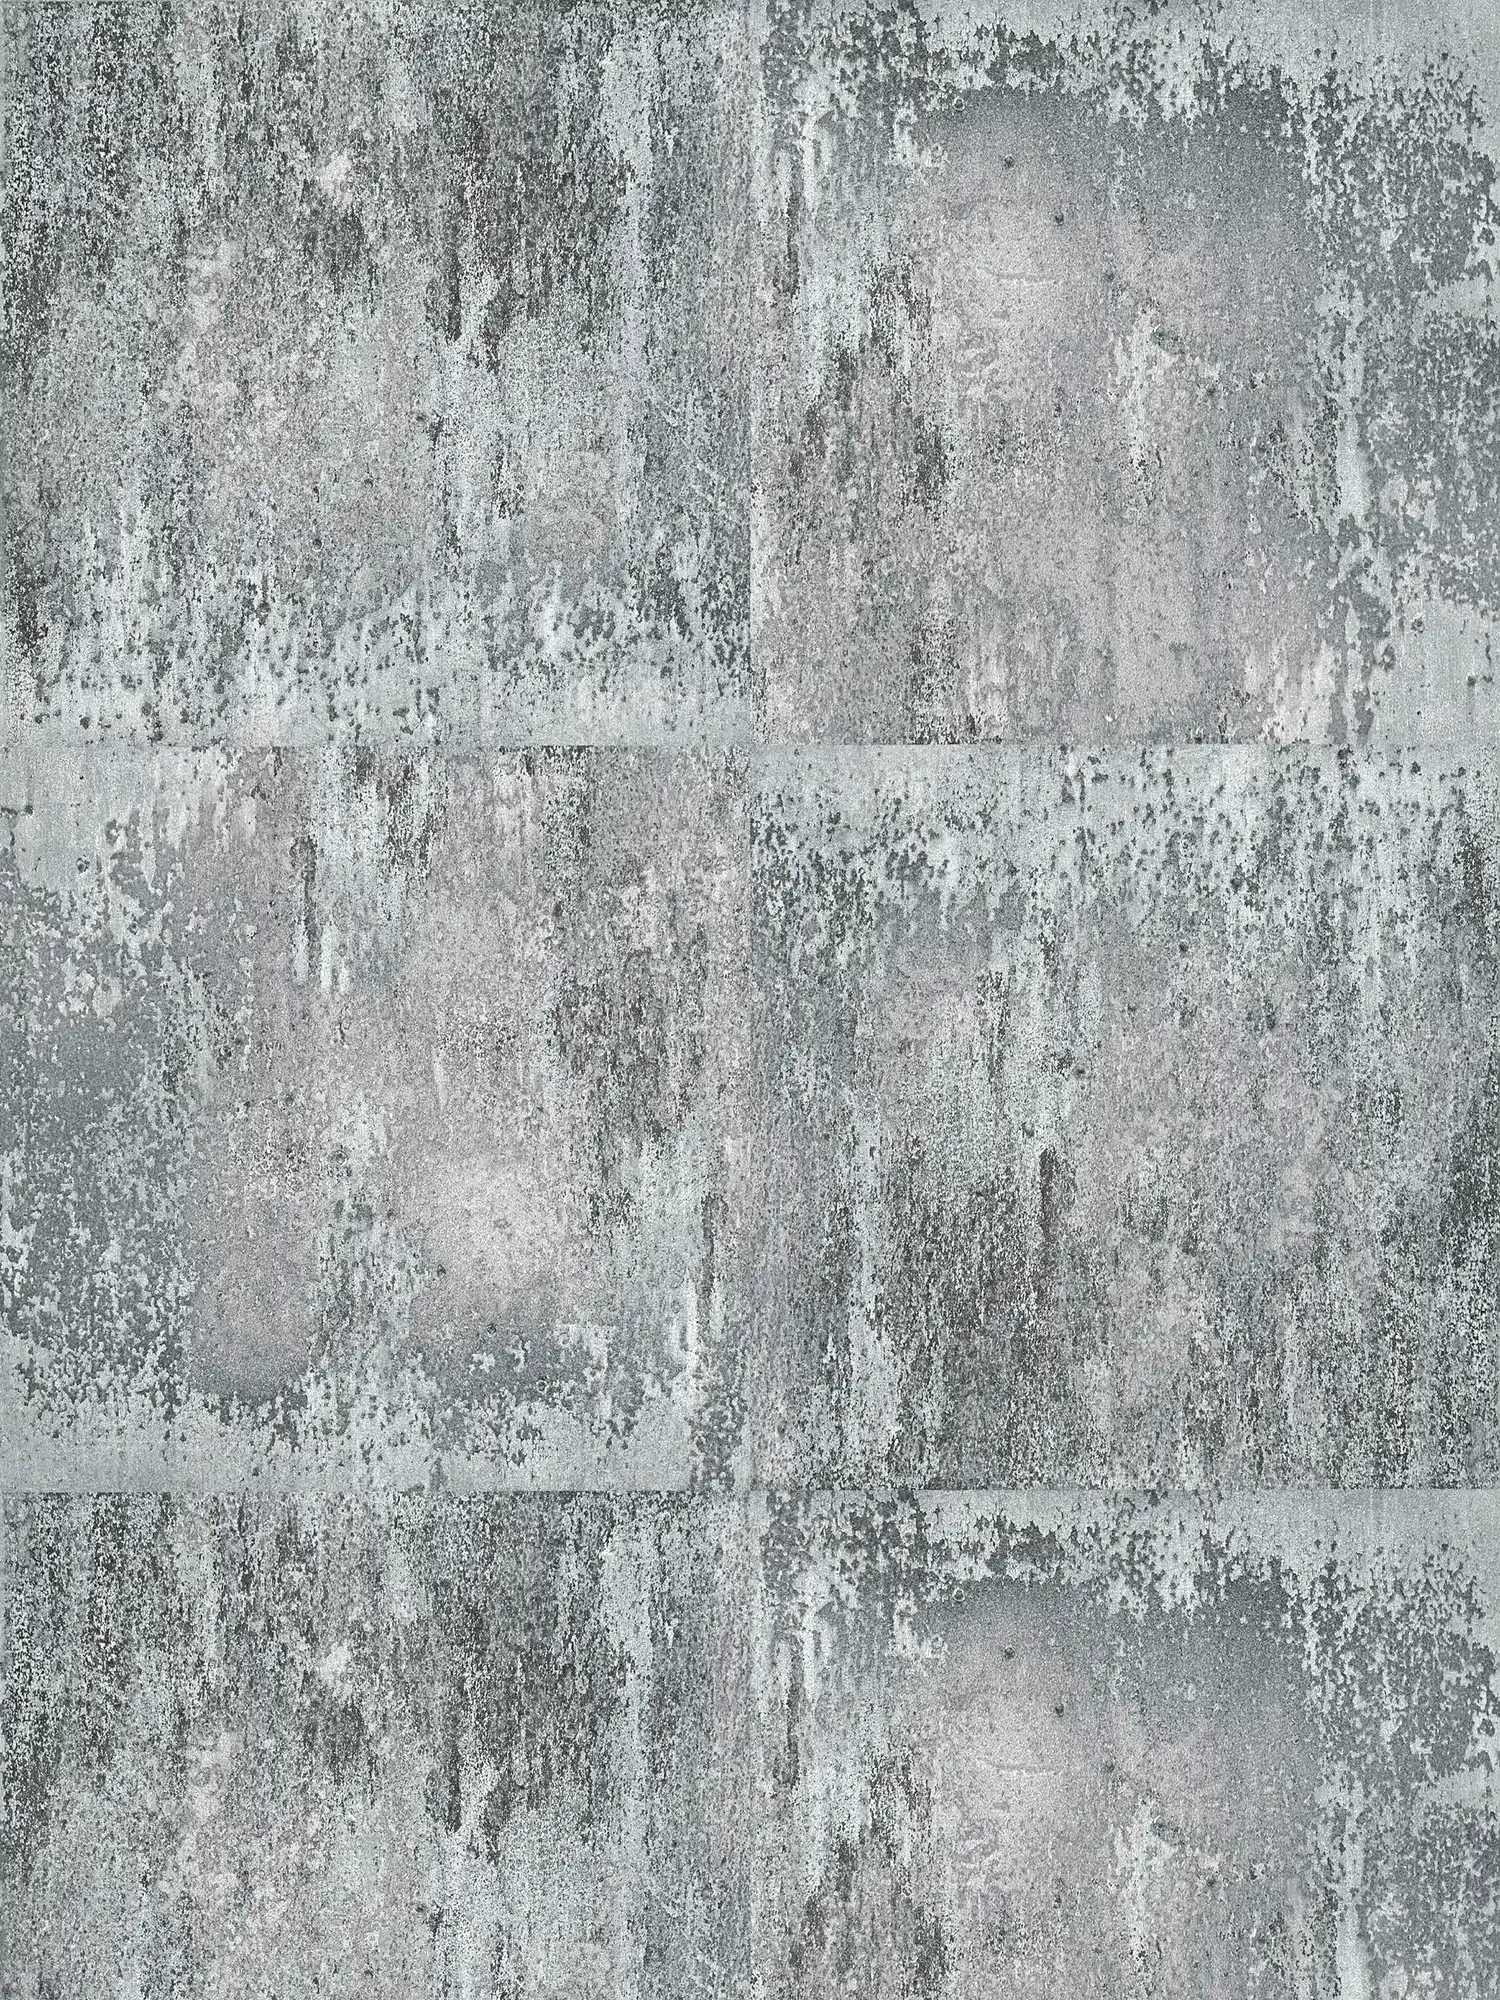 Papel pintado con aspecto metálico rústico y dibujo rugoso - gris, negro, plata
